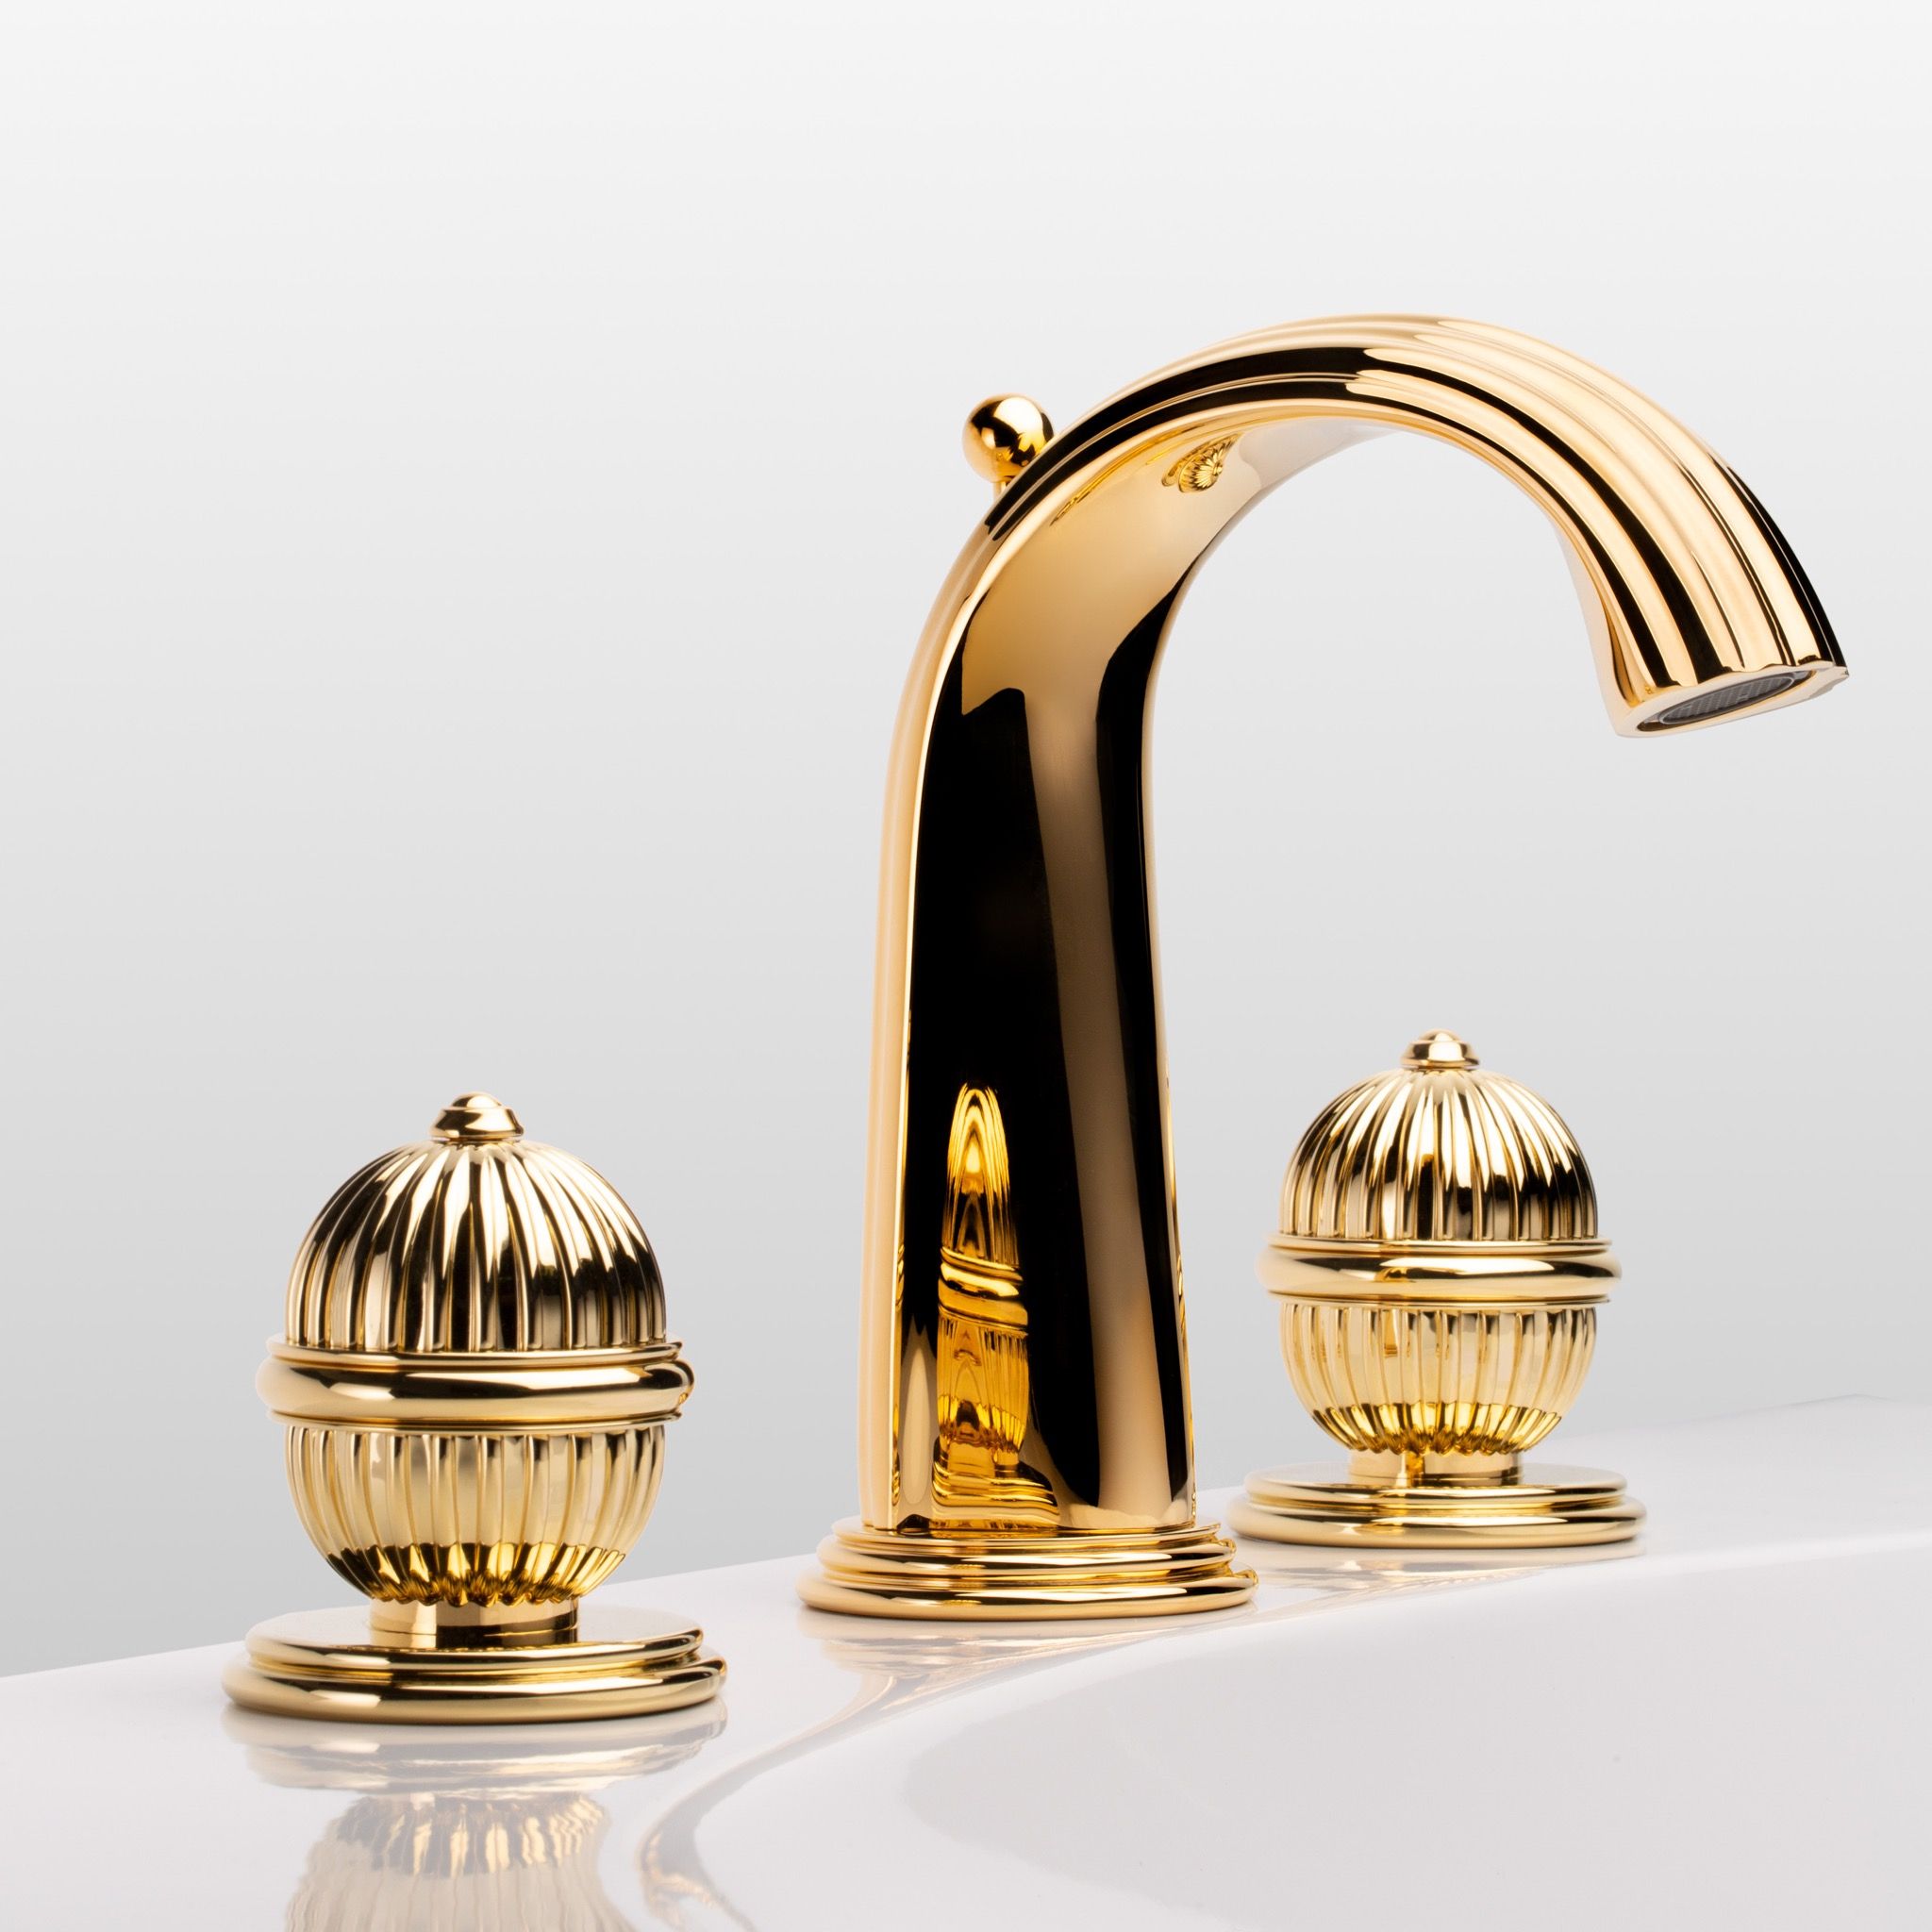  Vòi chậu rửa mặt cổ điển Anfa polished gold bằng đồng - 1301 